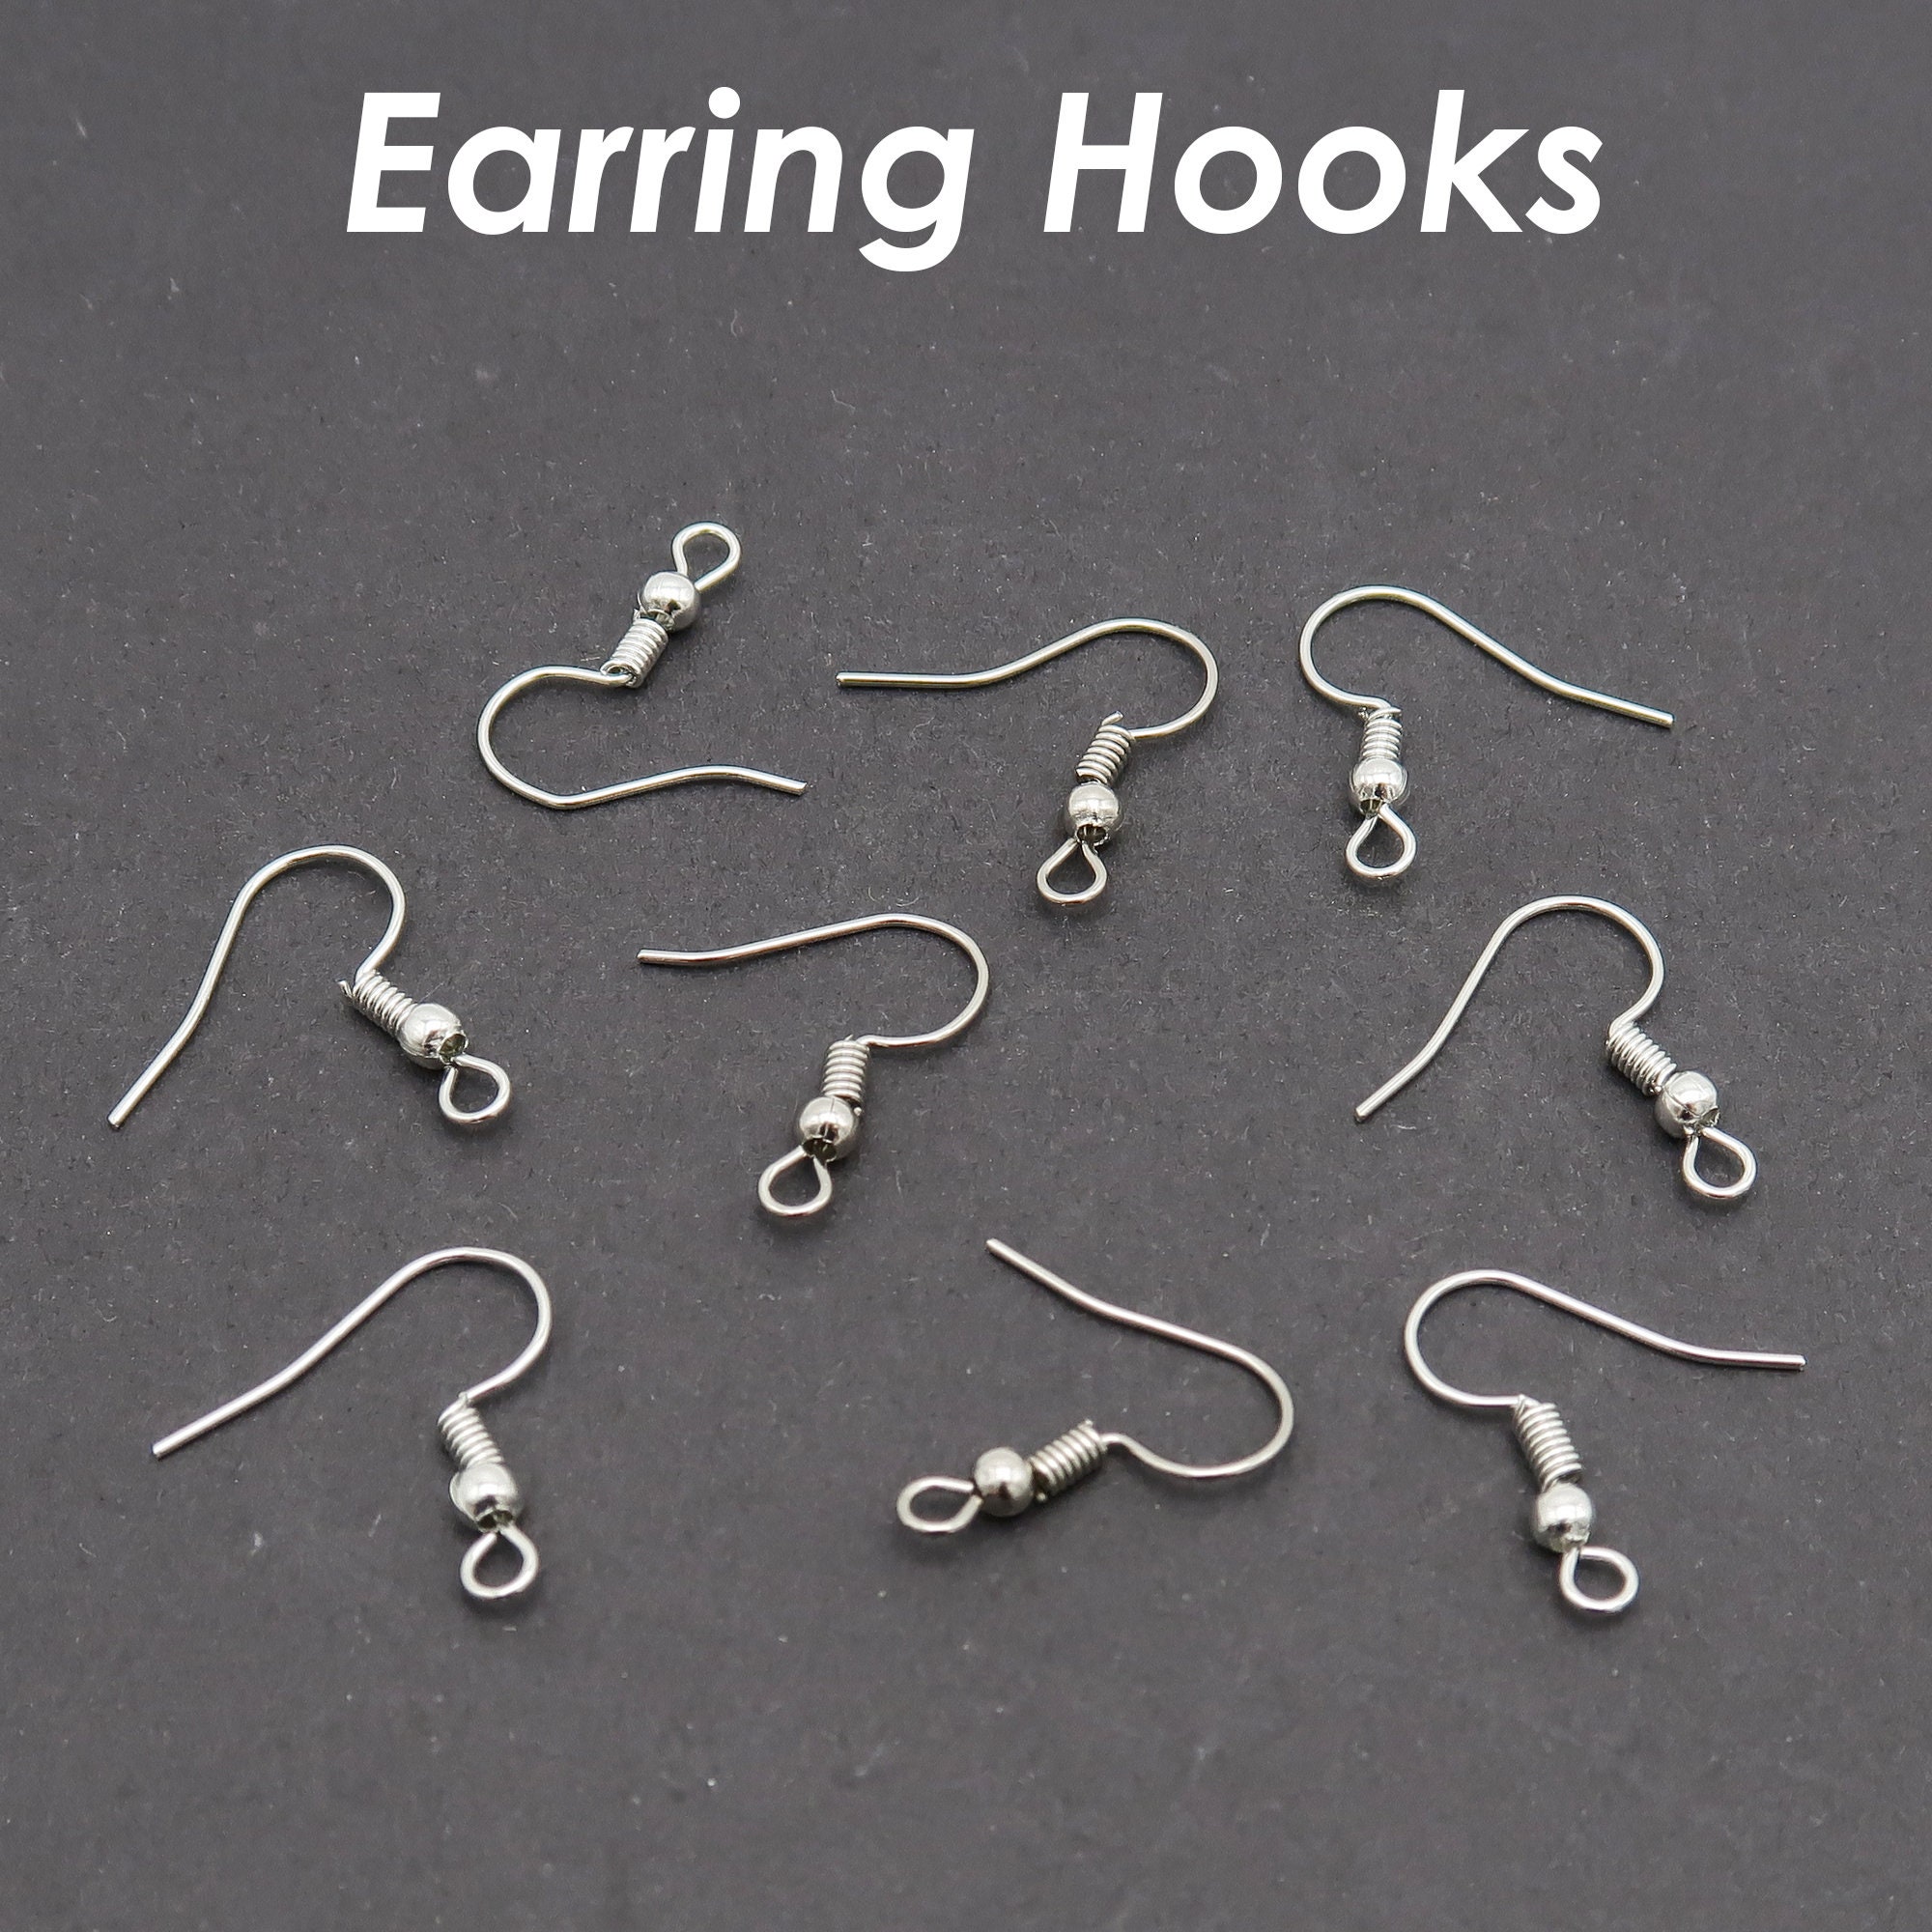 100 X Earrings Hooks Hypoallergenic Earring Wire Bulk Wholesale